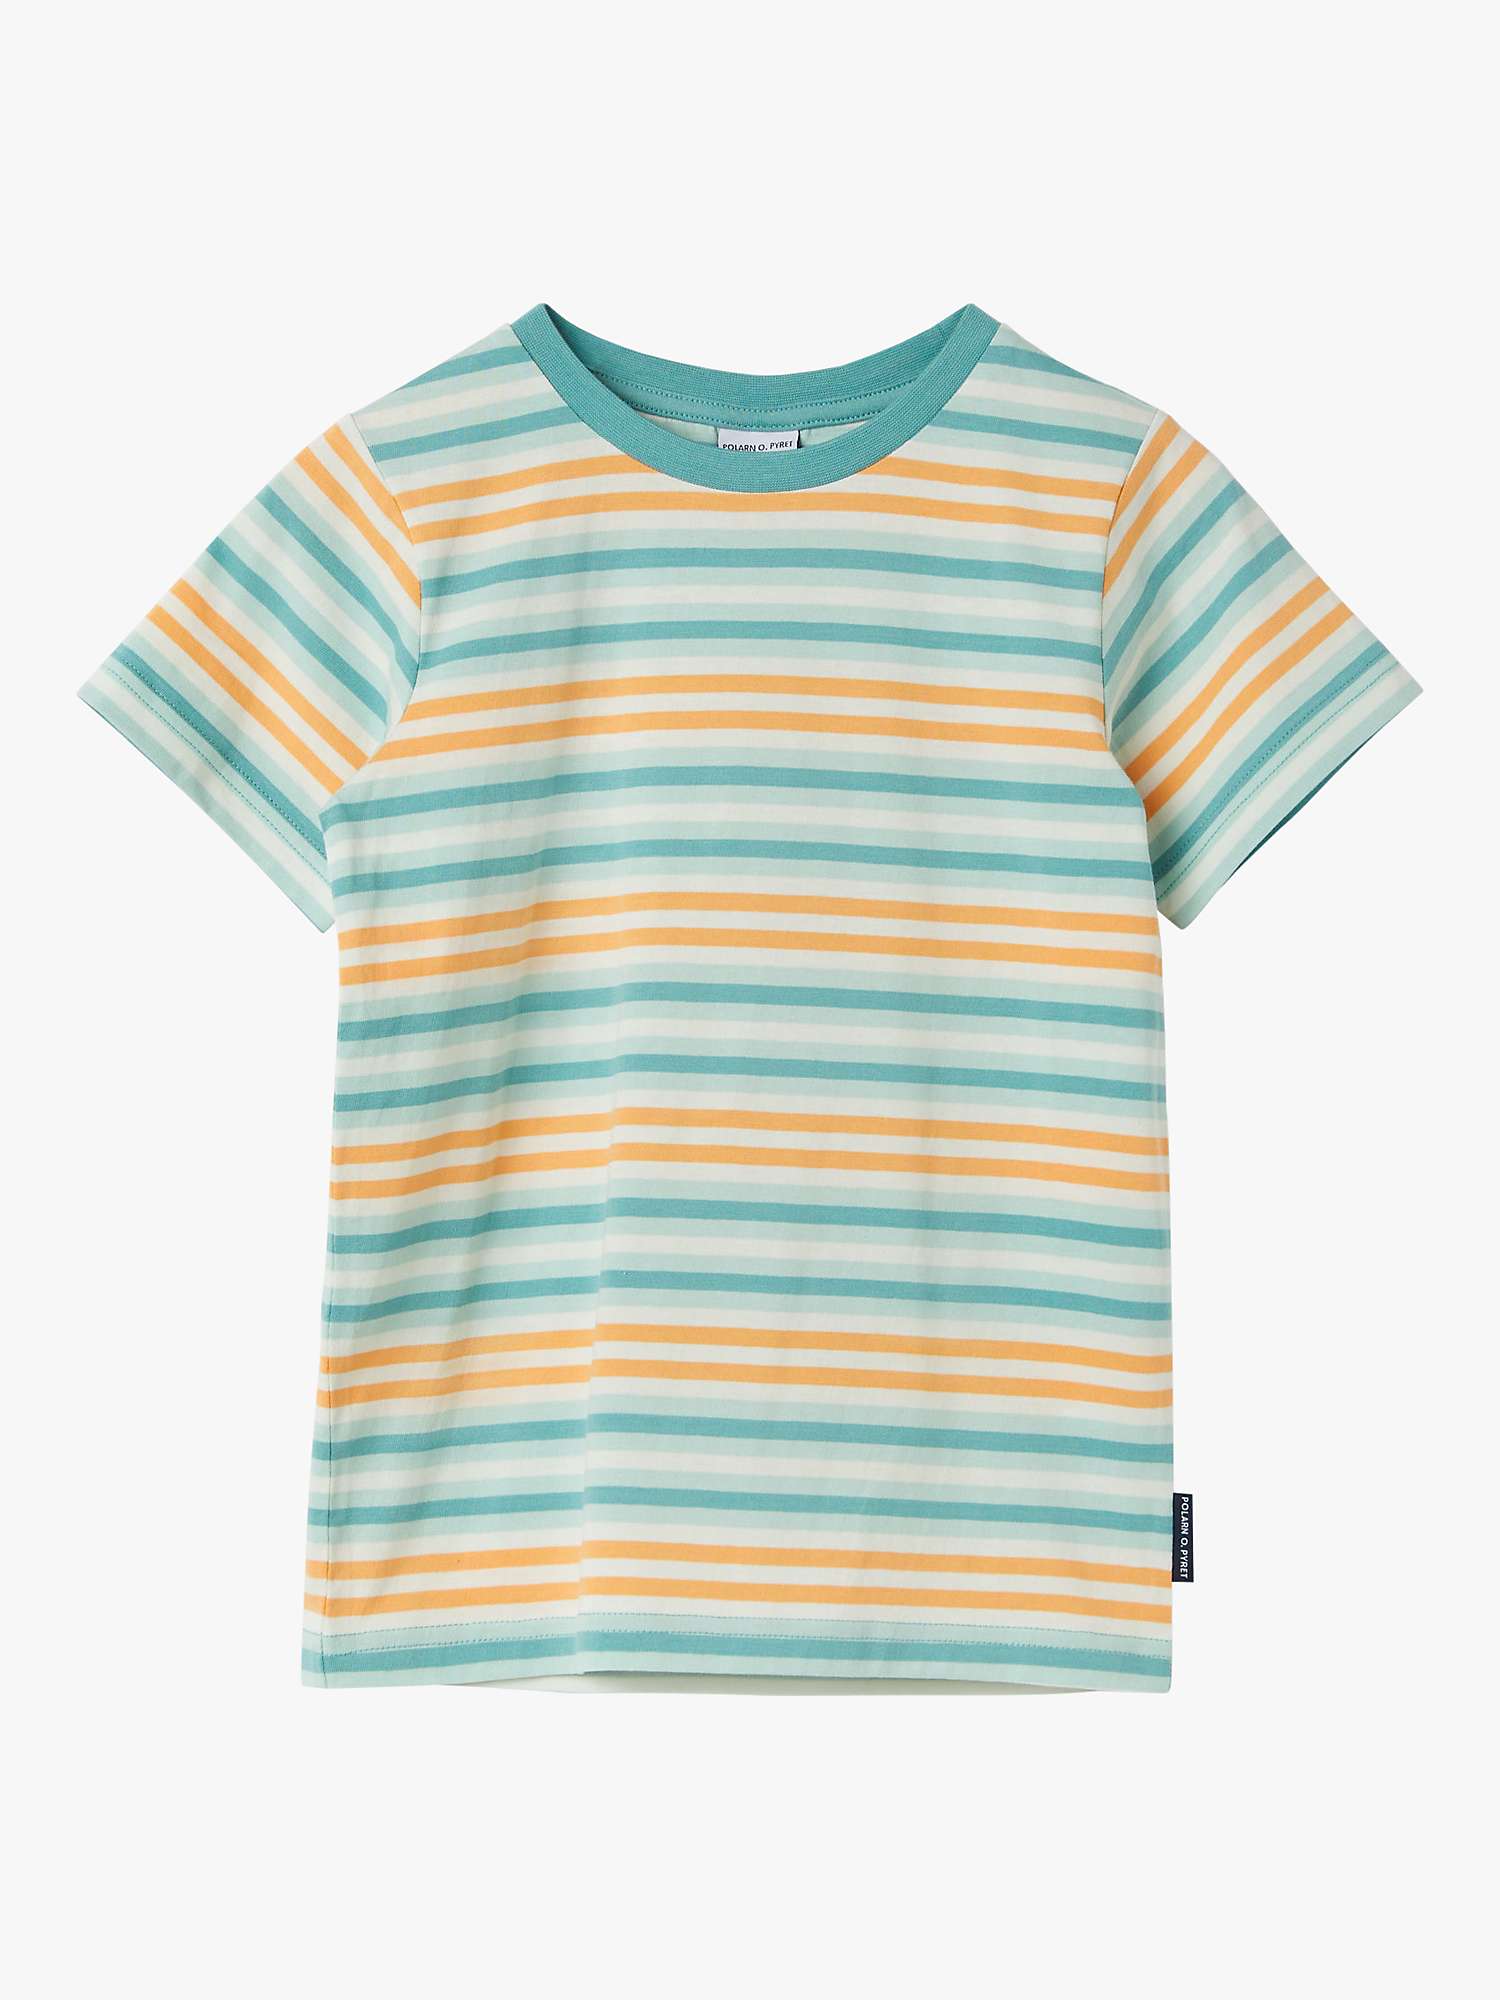 Buy Polarn O. Pyret Kids' Organic Cotton Stripe T-Shirt Online at johnlewis.com